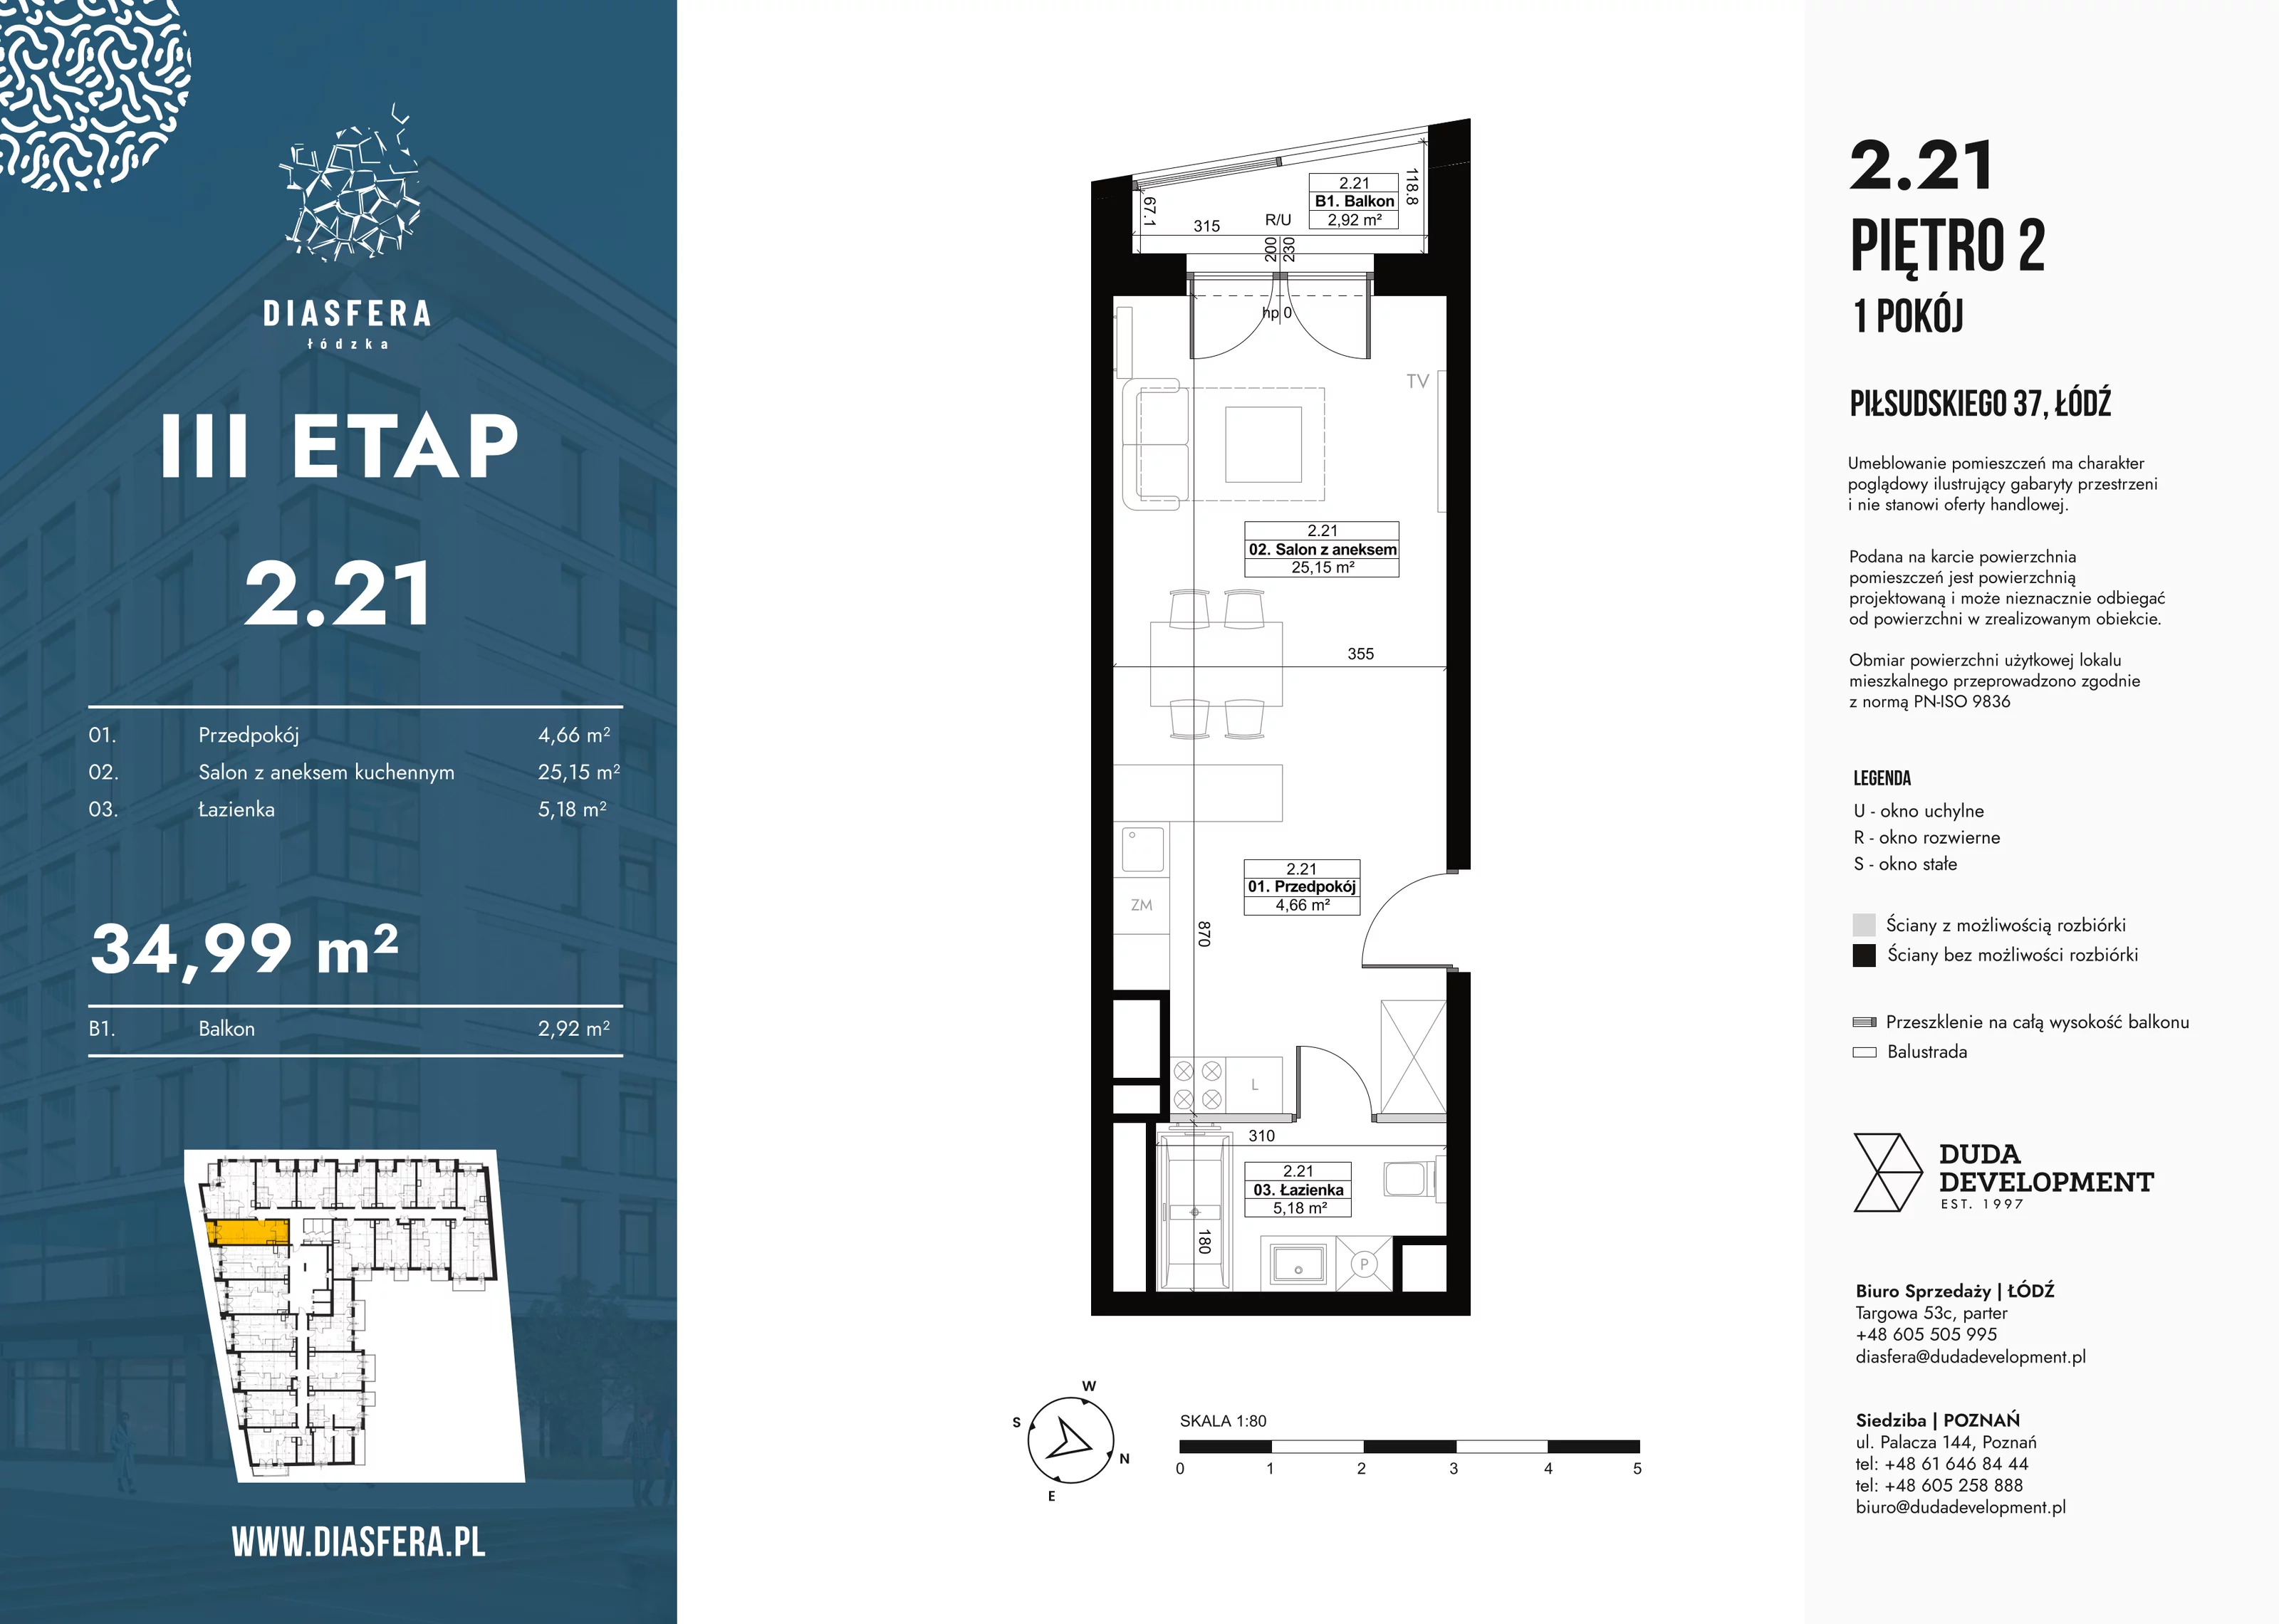 Mieszkanie 34,99 m², piętro 2, oferta nr 2_21, Diasfera III, Łódź, Śródmieście, al. Piłsudskiego 37